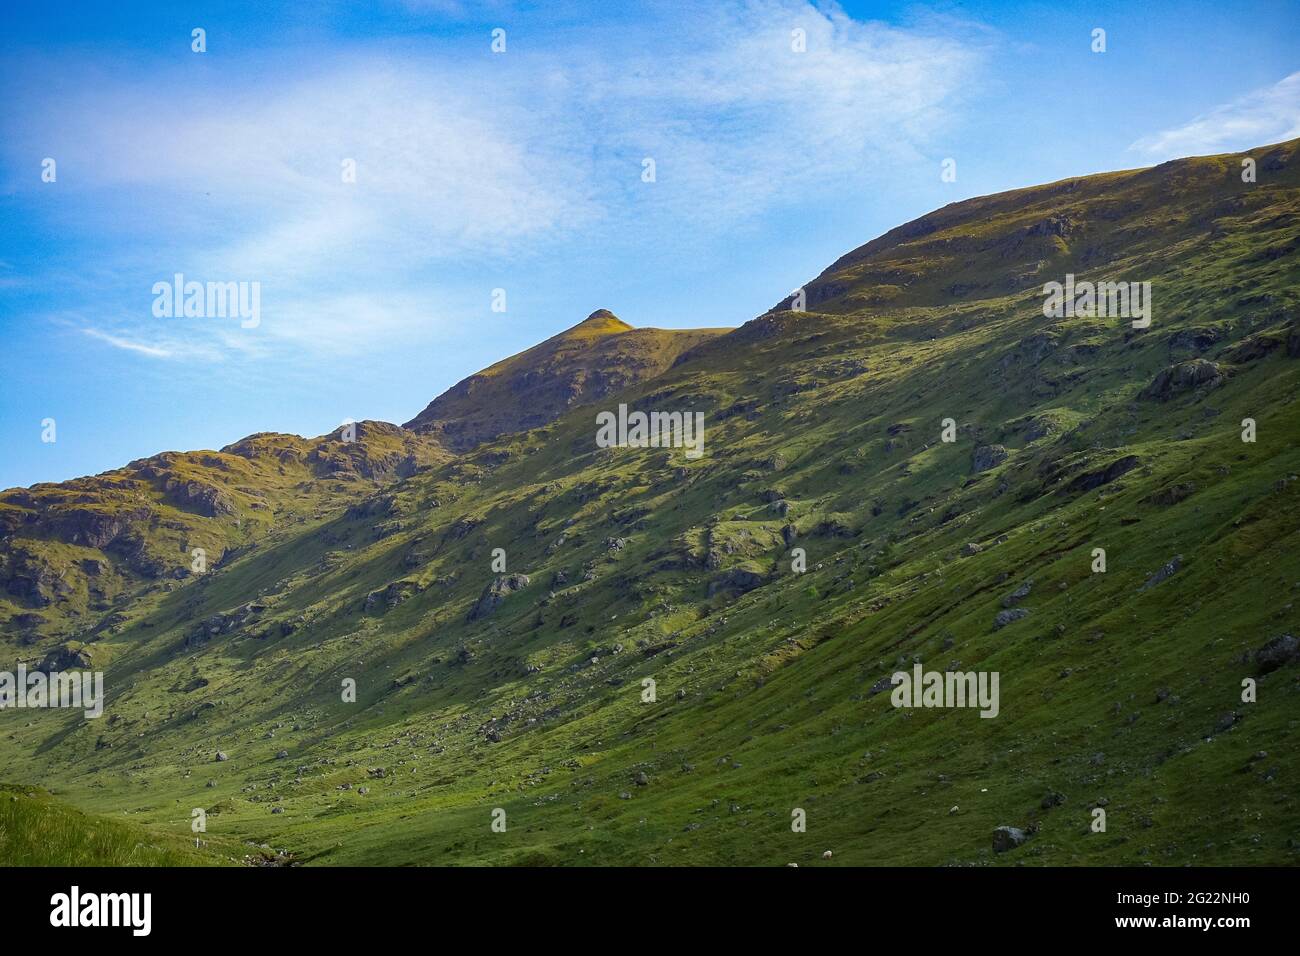 La montagna munro di Stob Binnein, Scozia, con la sua prominente vetta visibile Foto Stock